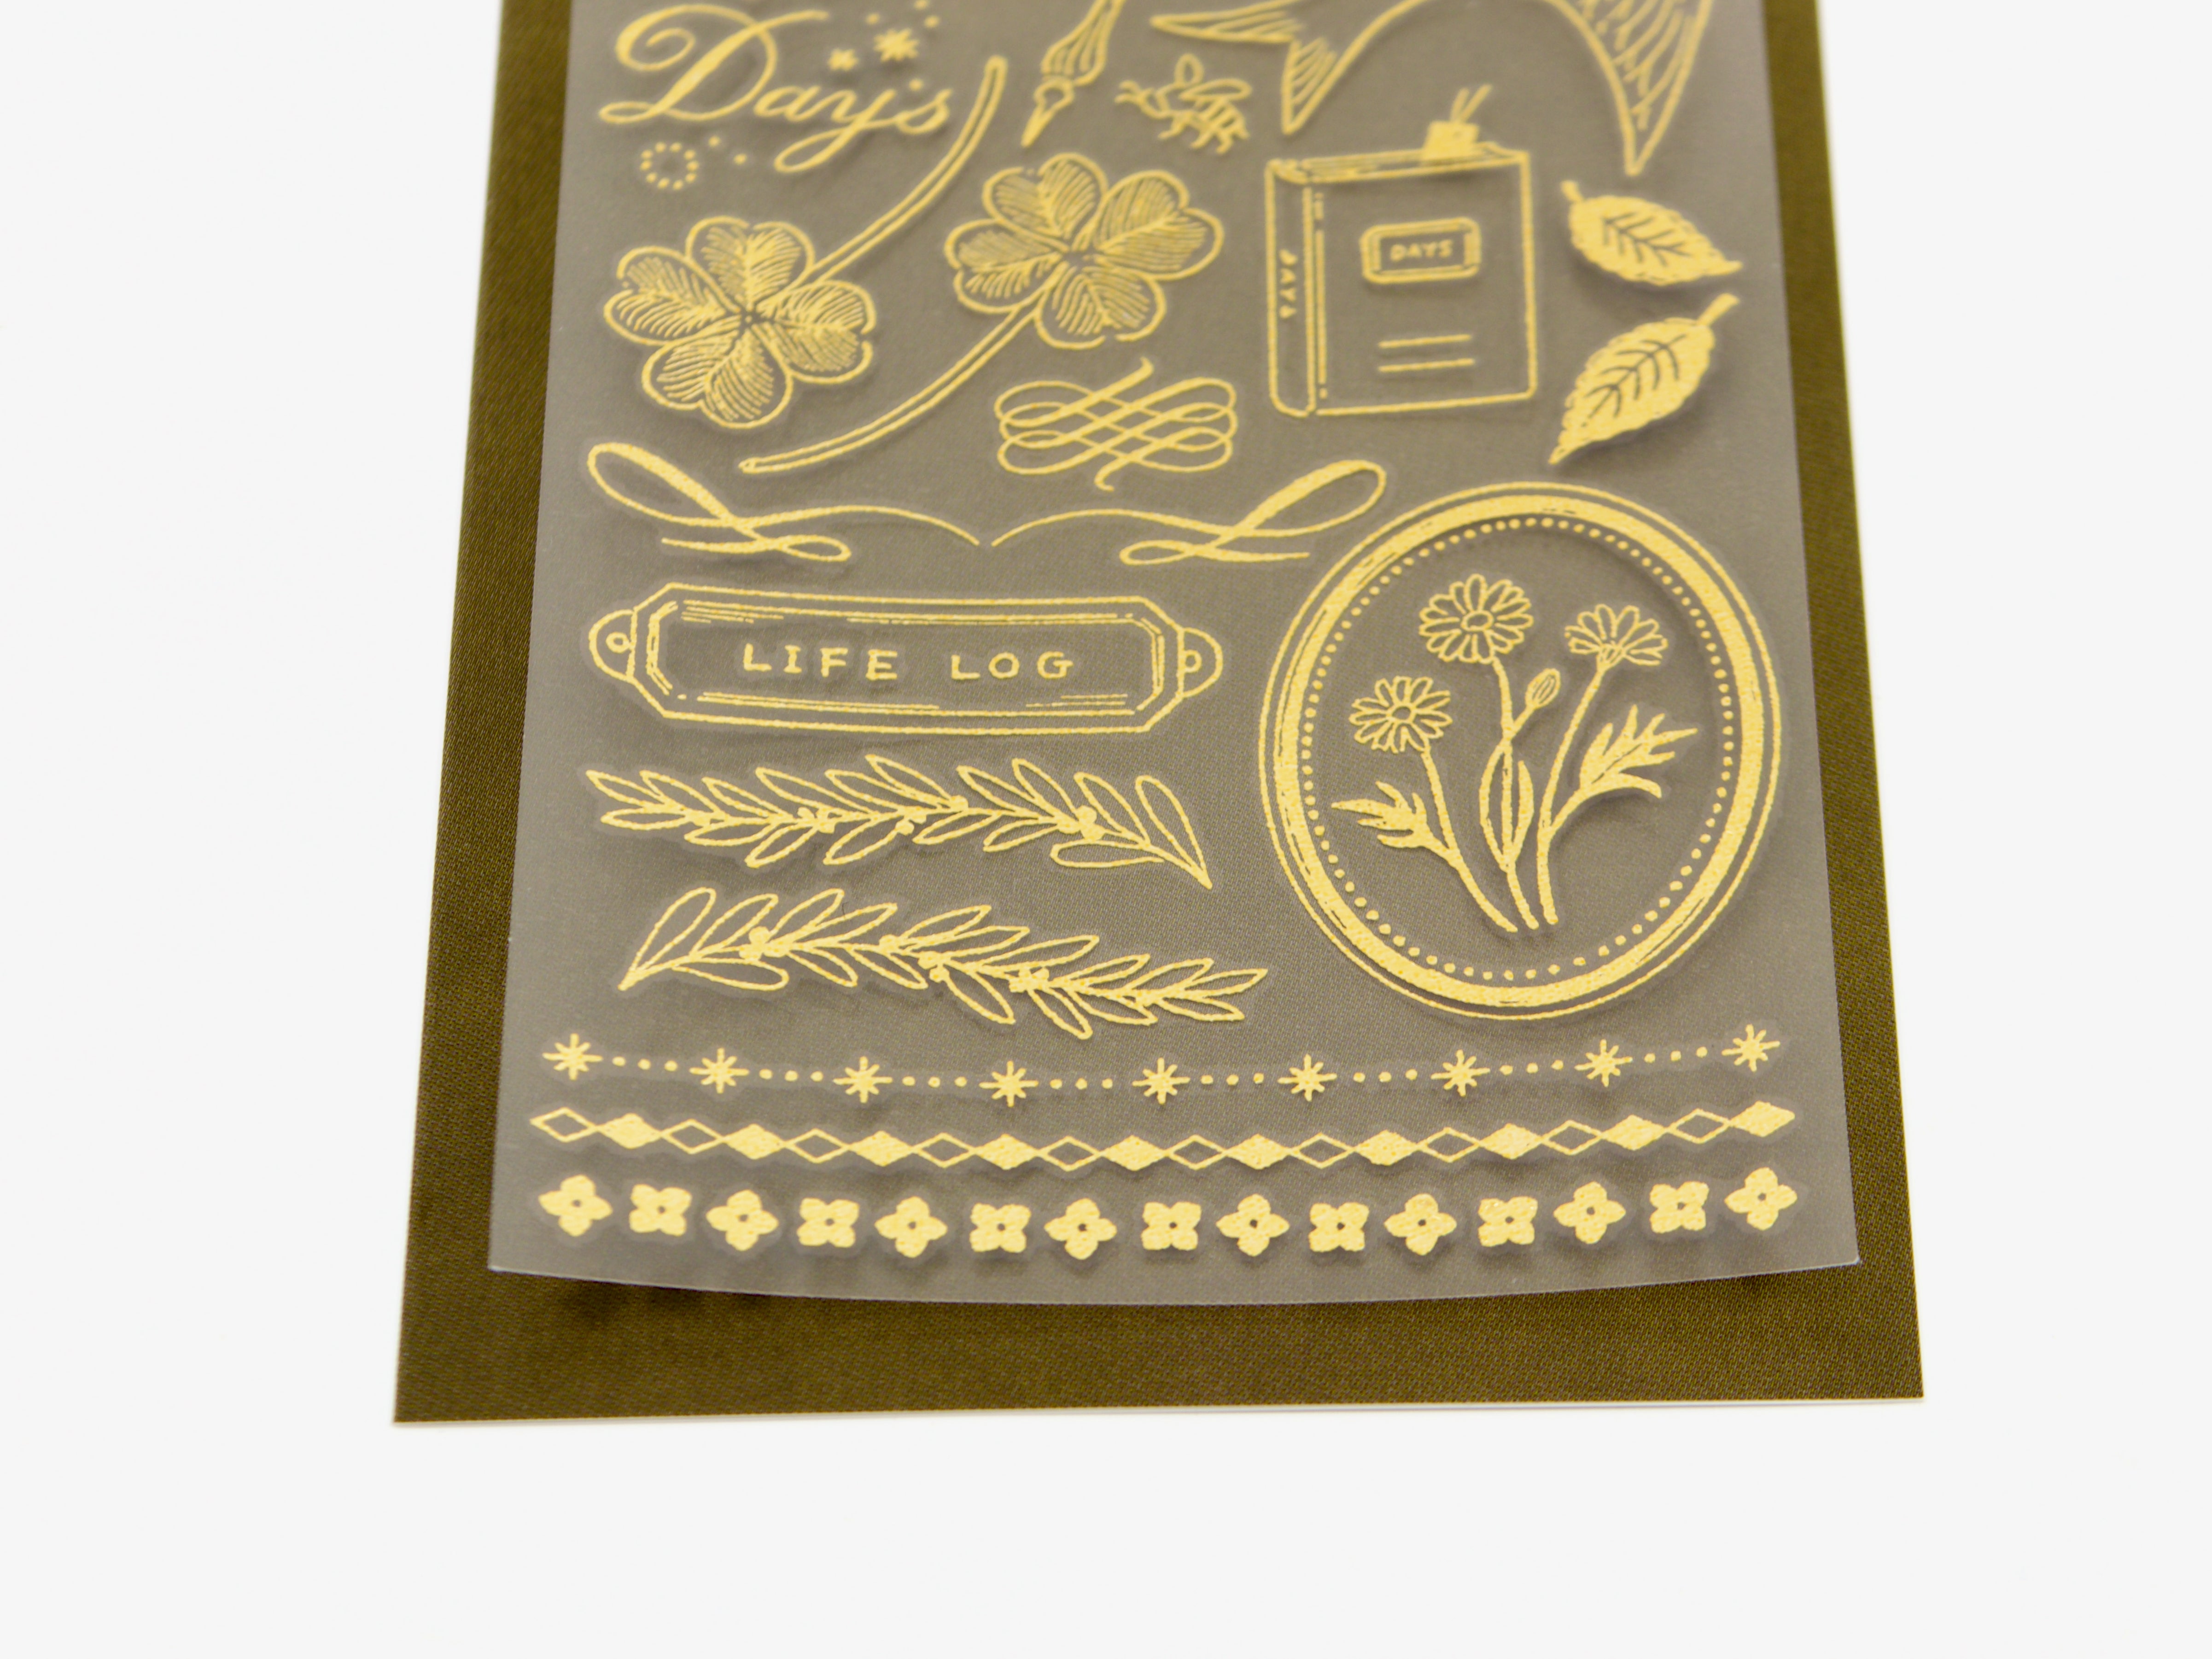 Midori Gold Foil Transfer Stickers